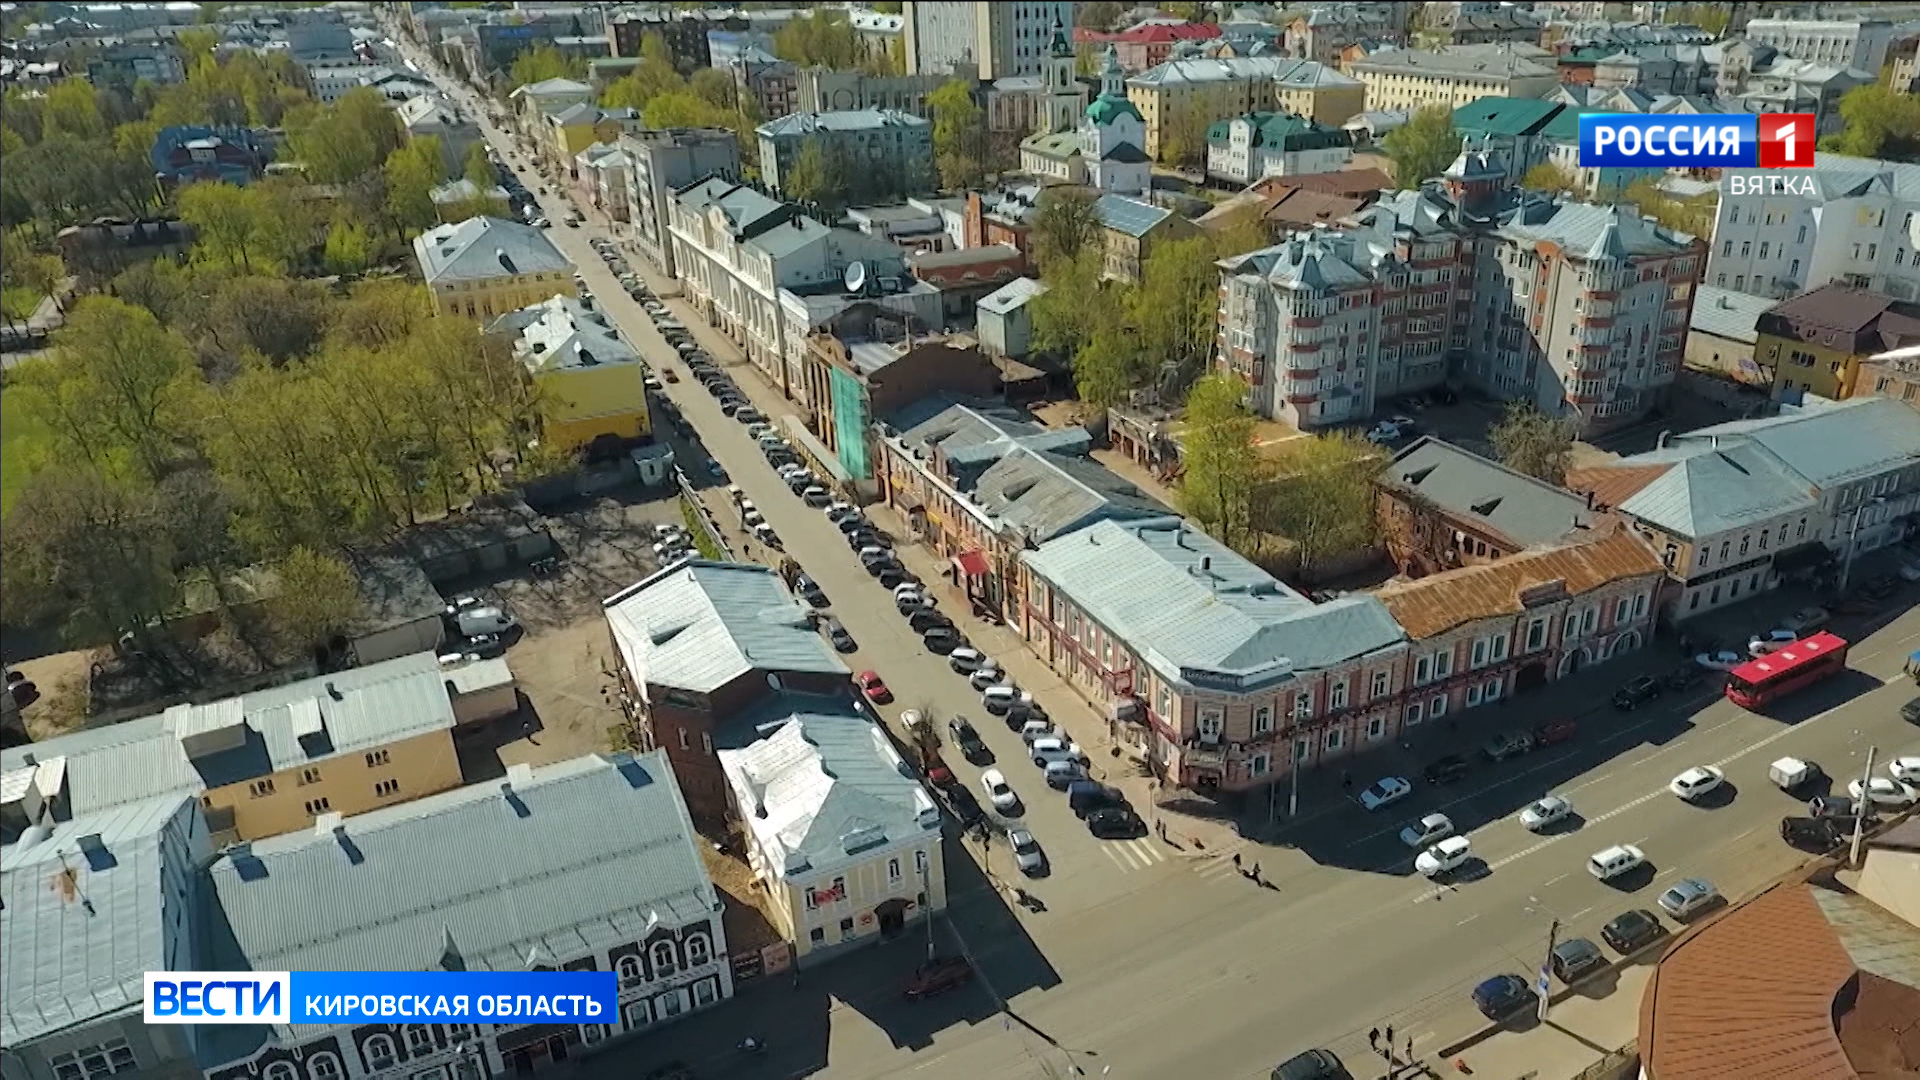 Открытие летнего туристического сезона в Кирове переносится